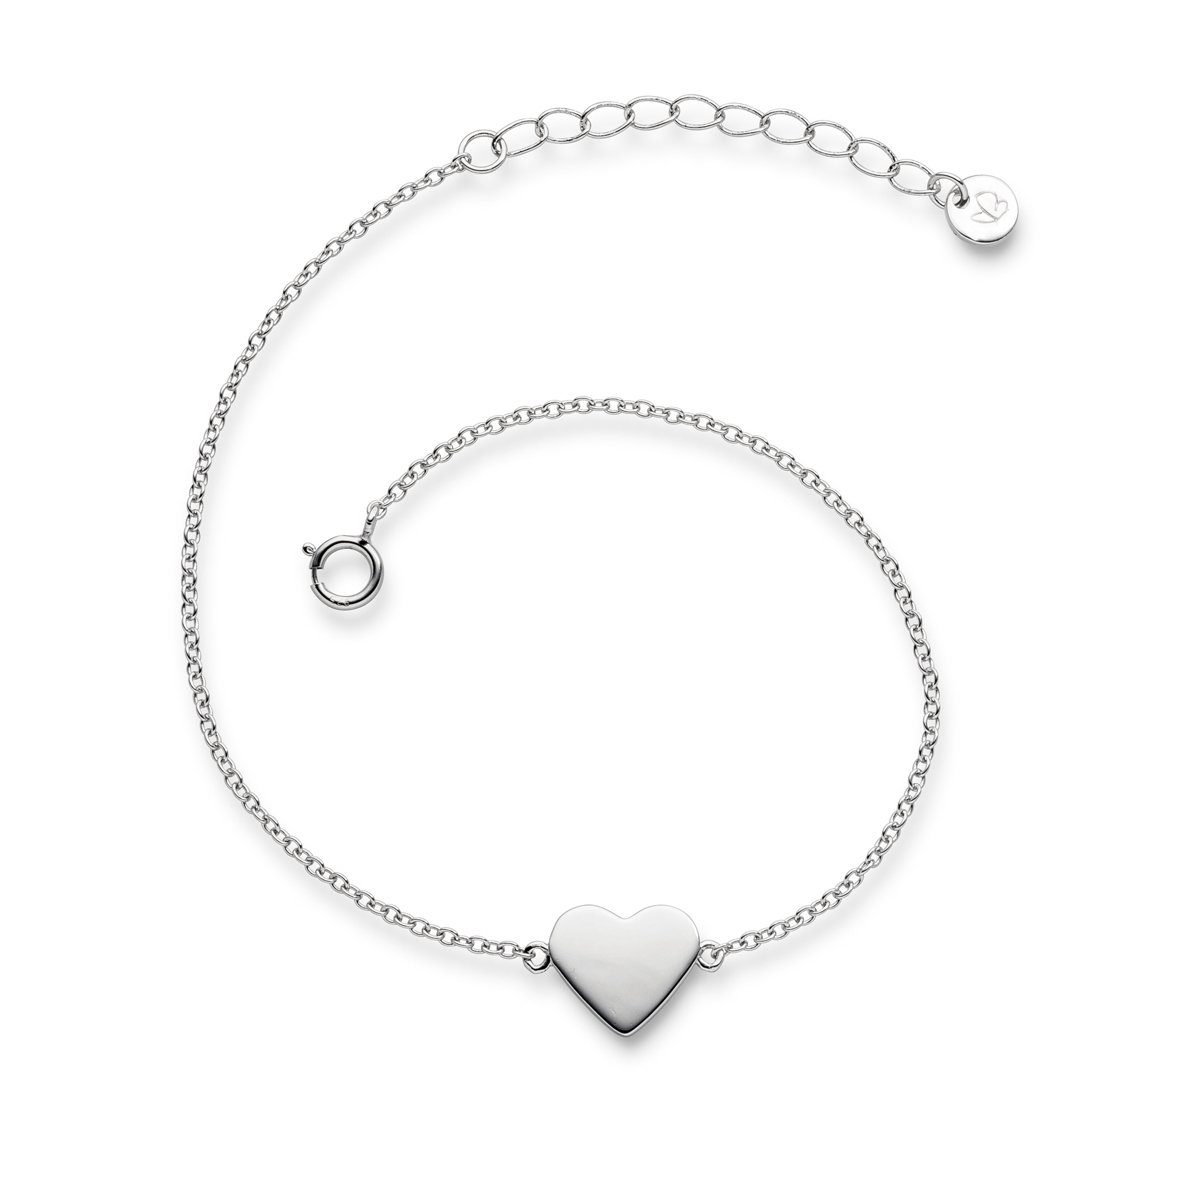 Glanzstücke München Damen-Armband Herz Sterling Silber 17 + 3 cm - Armkettchen mit Herz-Anhänger Silberkettchen Silber 925 Herzarmband